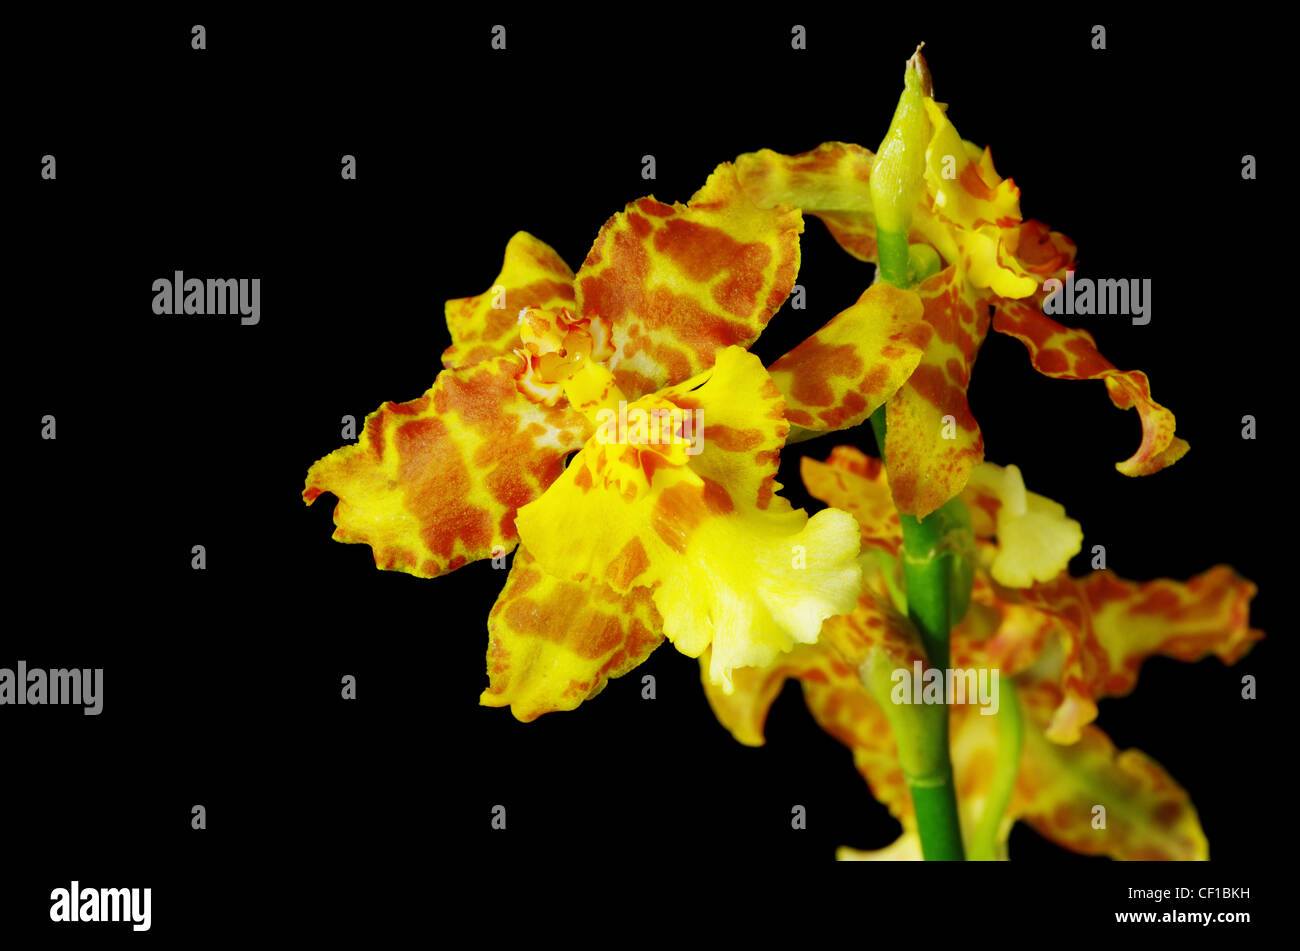 gelb und orange braun Gattungshybride Orchidee Blume auf schwarzem Hintergrund Stockfoto